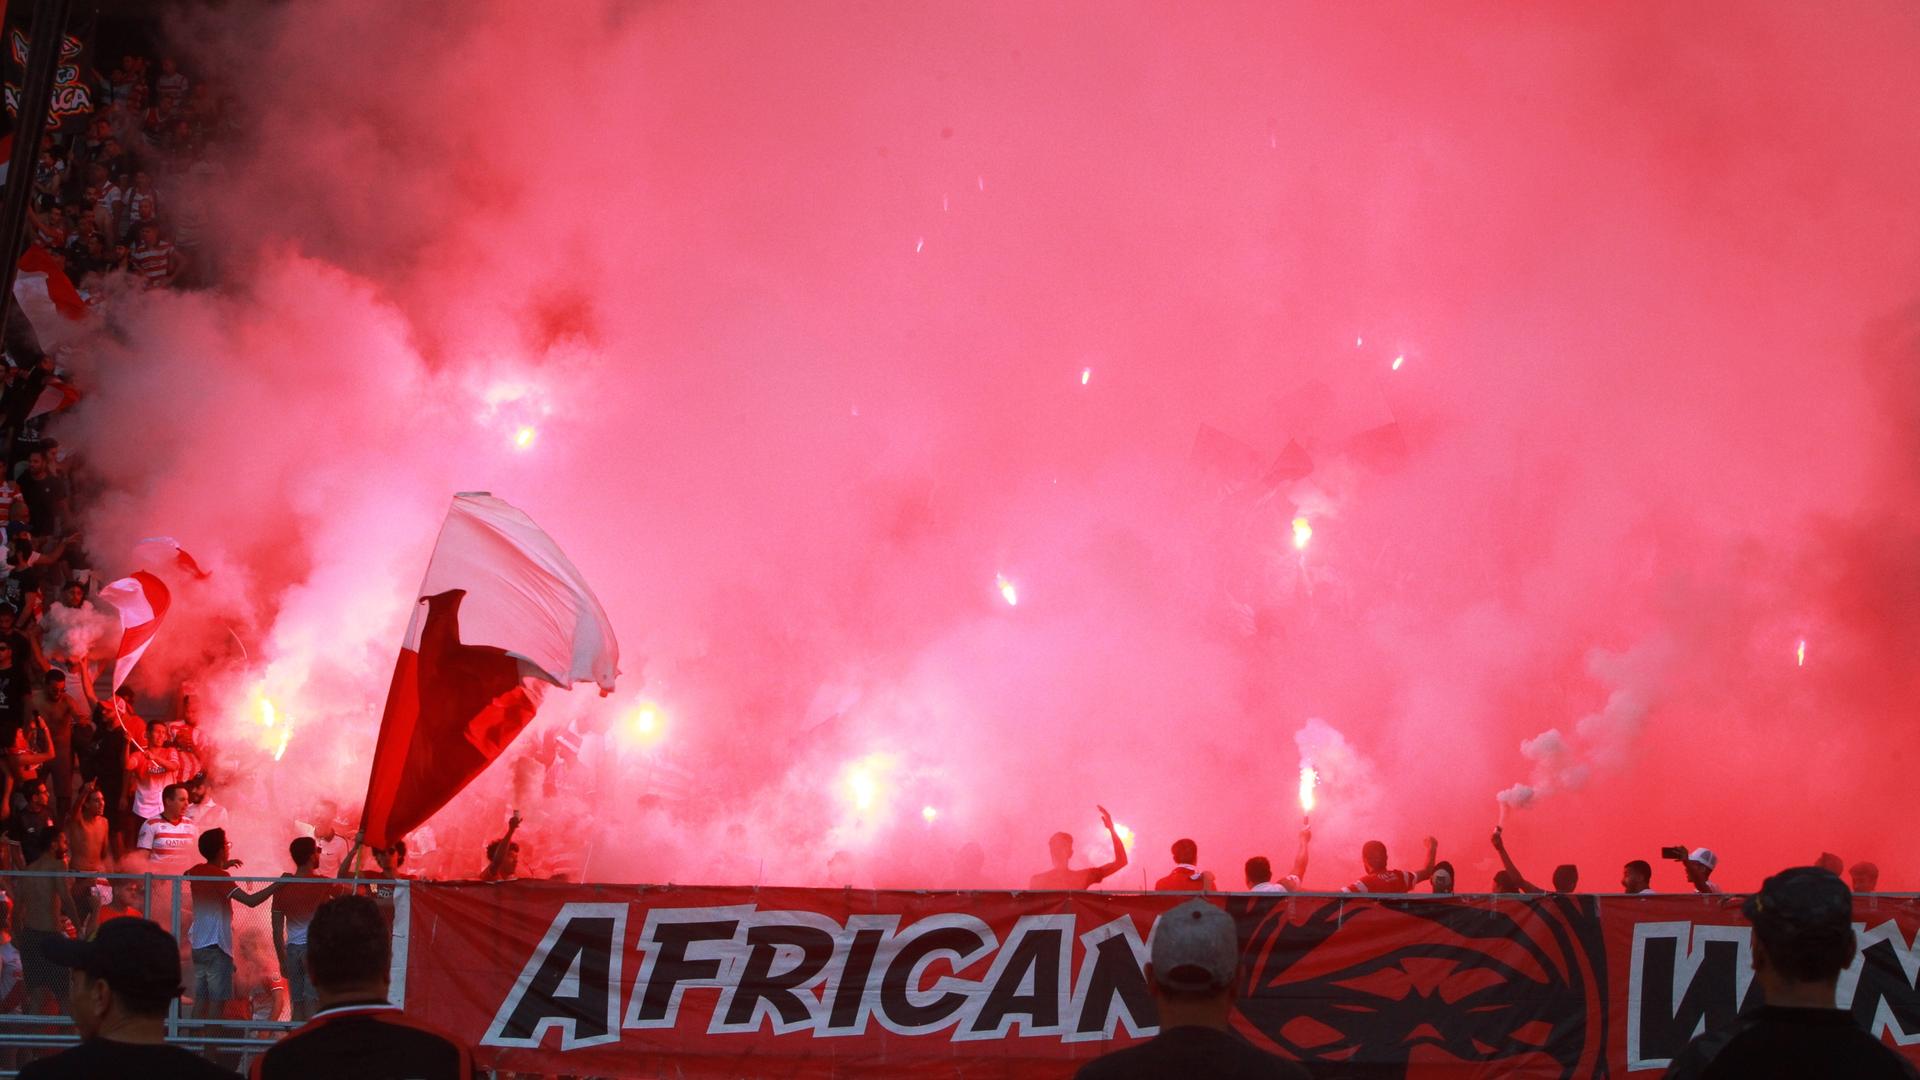 Blick in eine Gruppe Ultras im Stadion, sie sind kaum zu sehen, um sie ist roter Rauch. Am Tribünenrand hängt ein Banner, auf dem African steht.